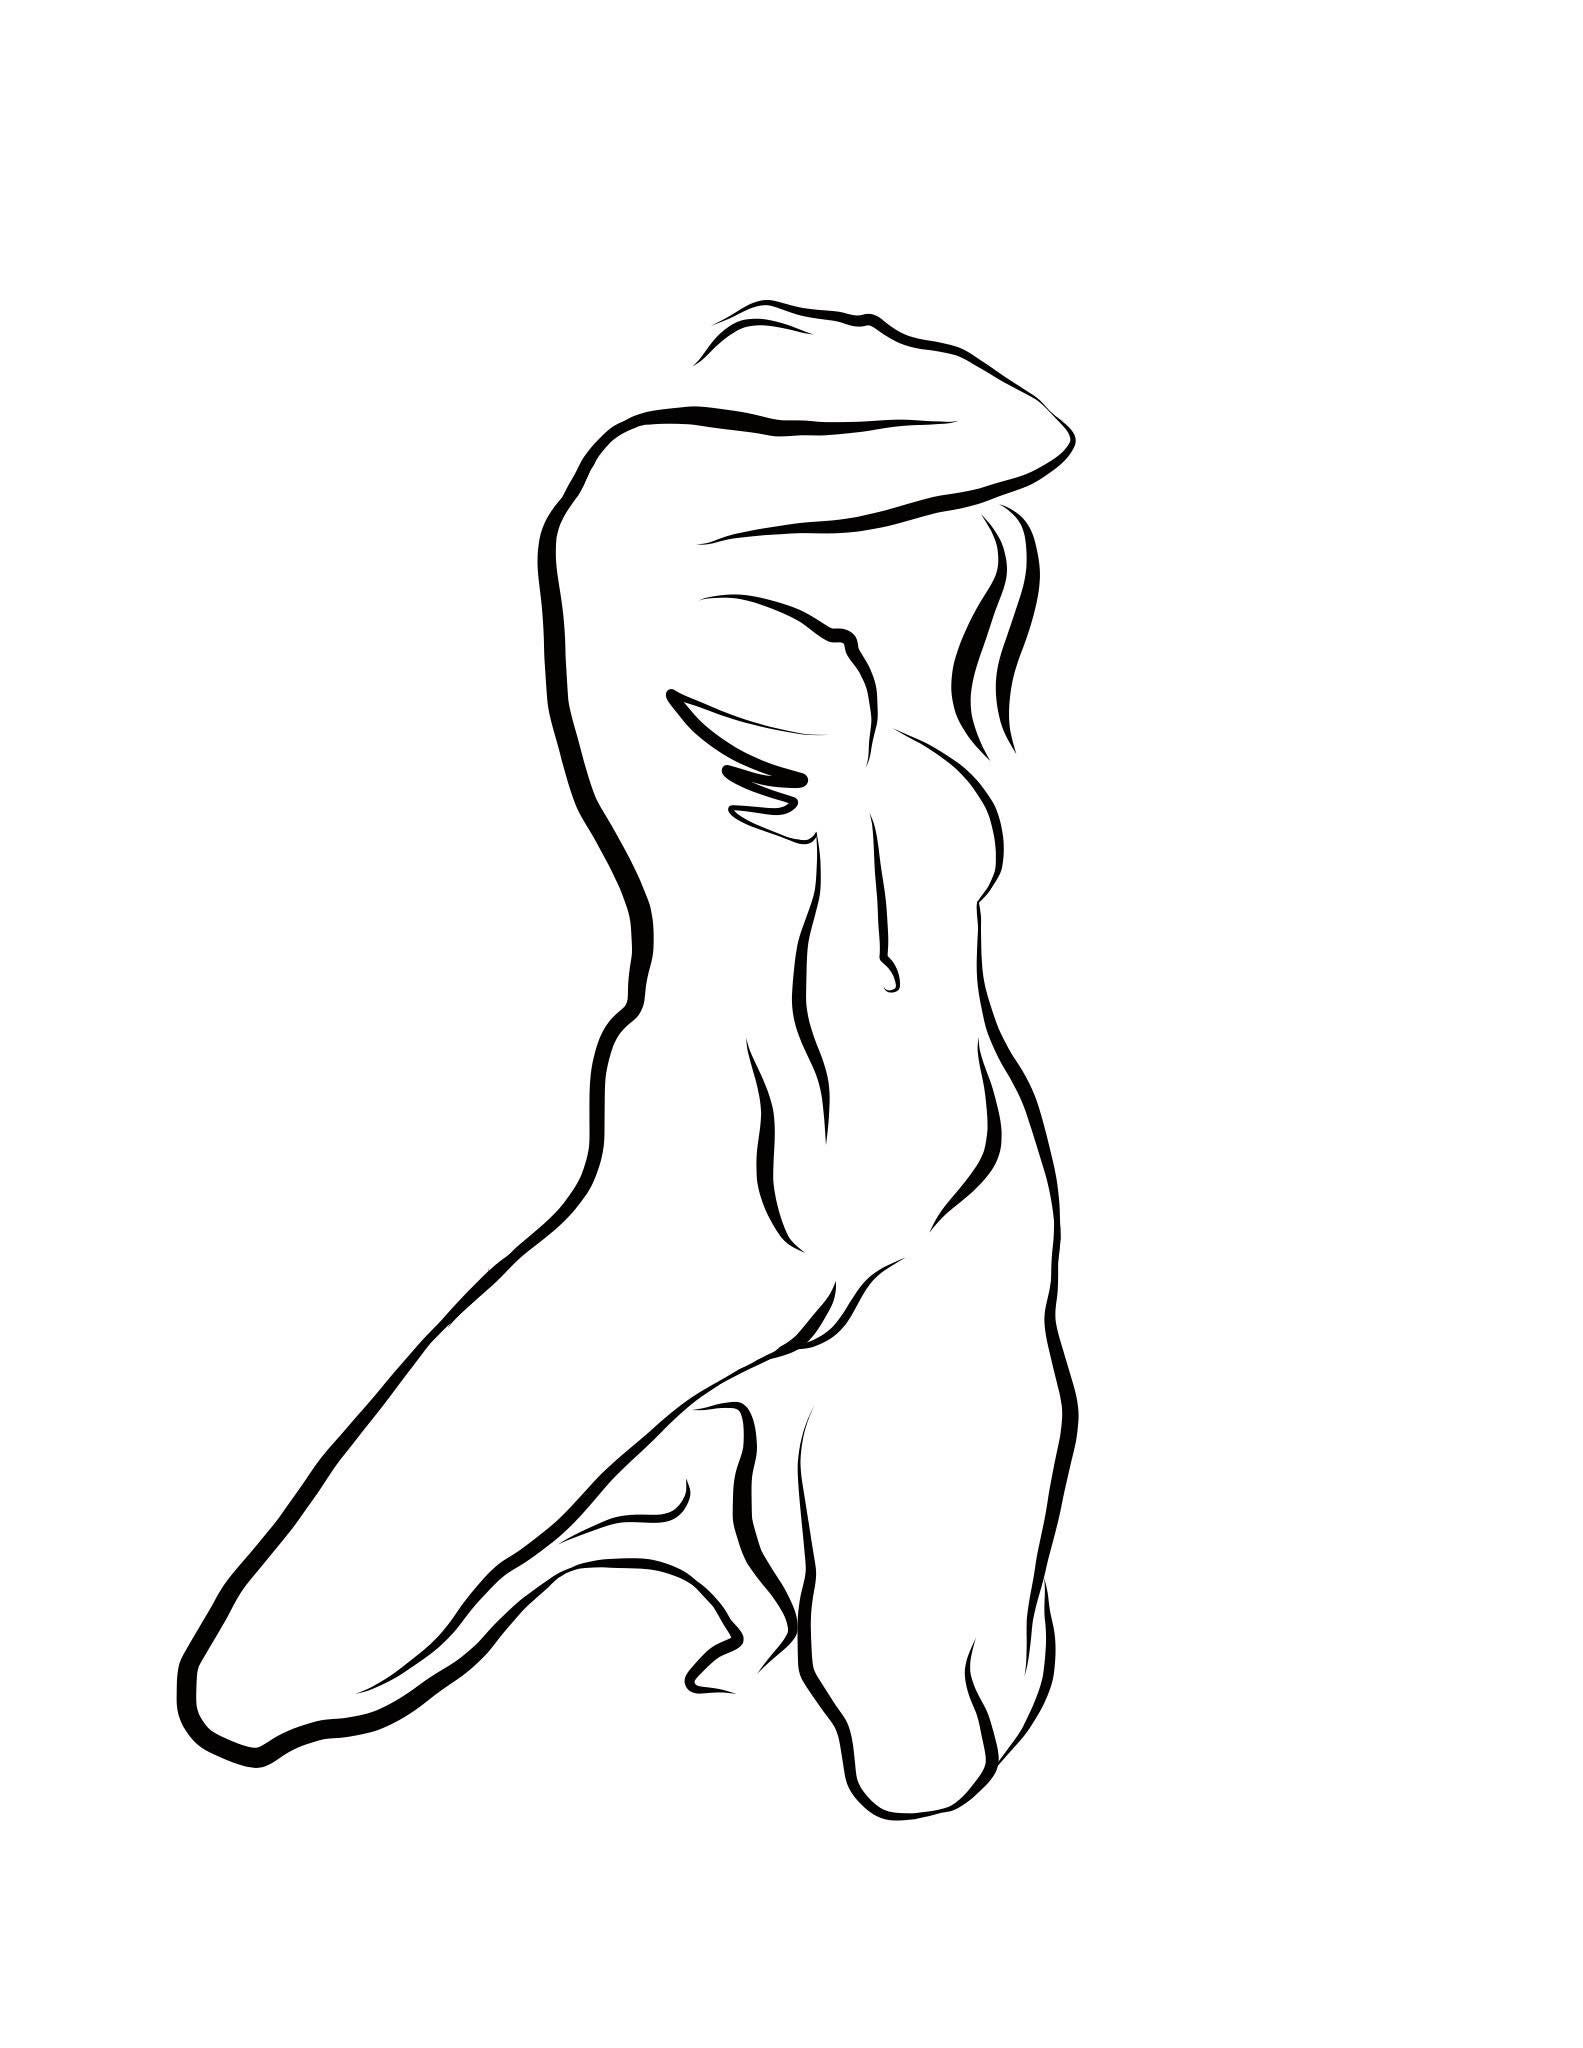 Michael Binkley Nude Print - Haiku #39, 1/50 - Digital Vector Drawing Kneeling Female Nude Woman Figure